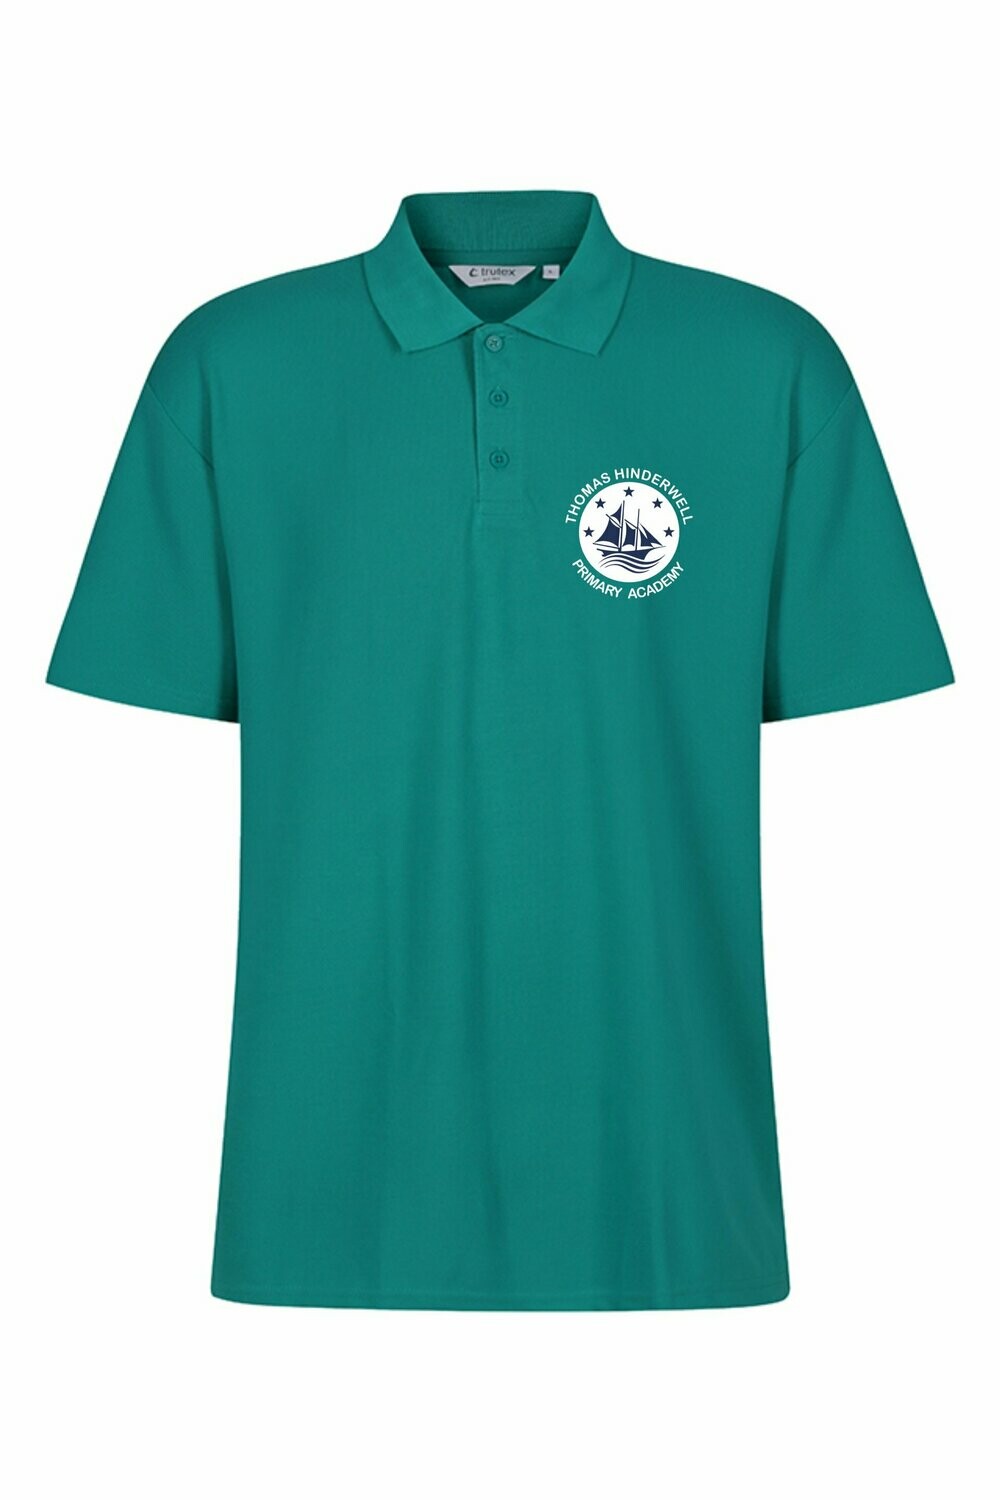 Hinderwell School Jade Green PE Polo Shirt